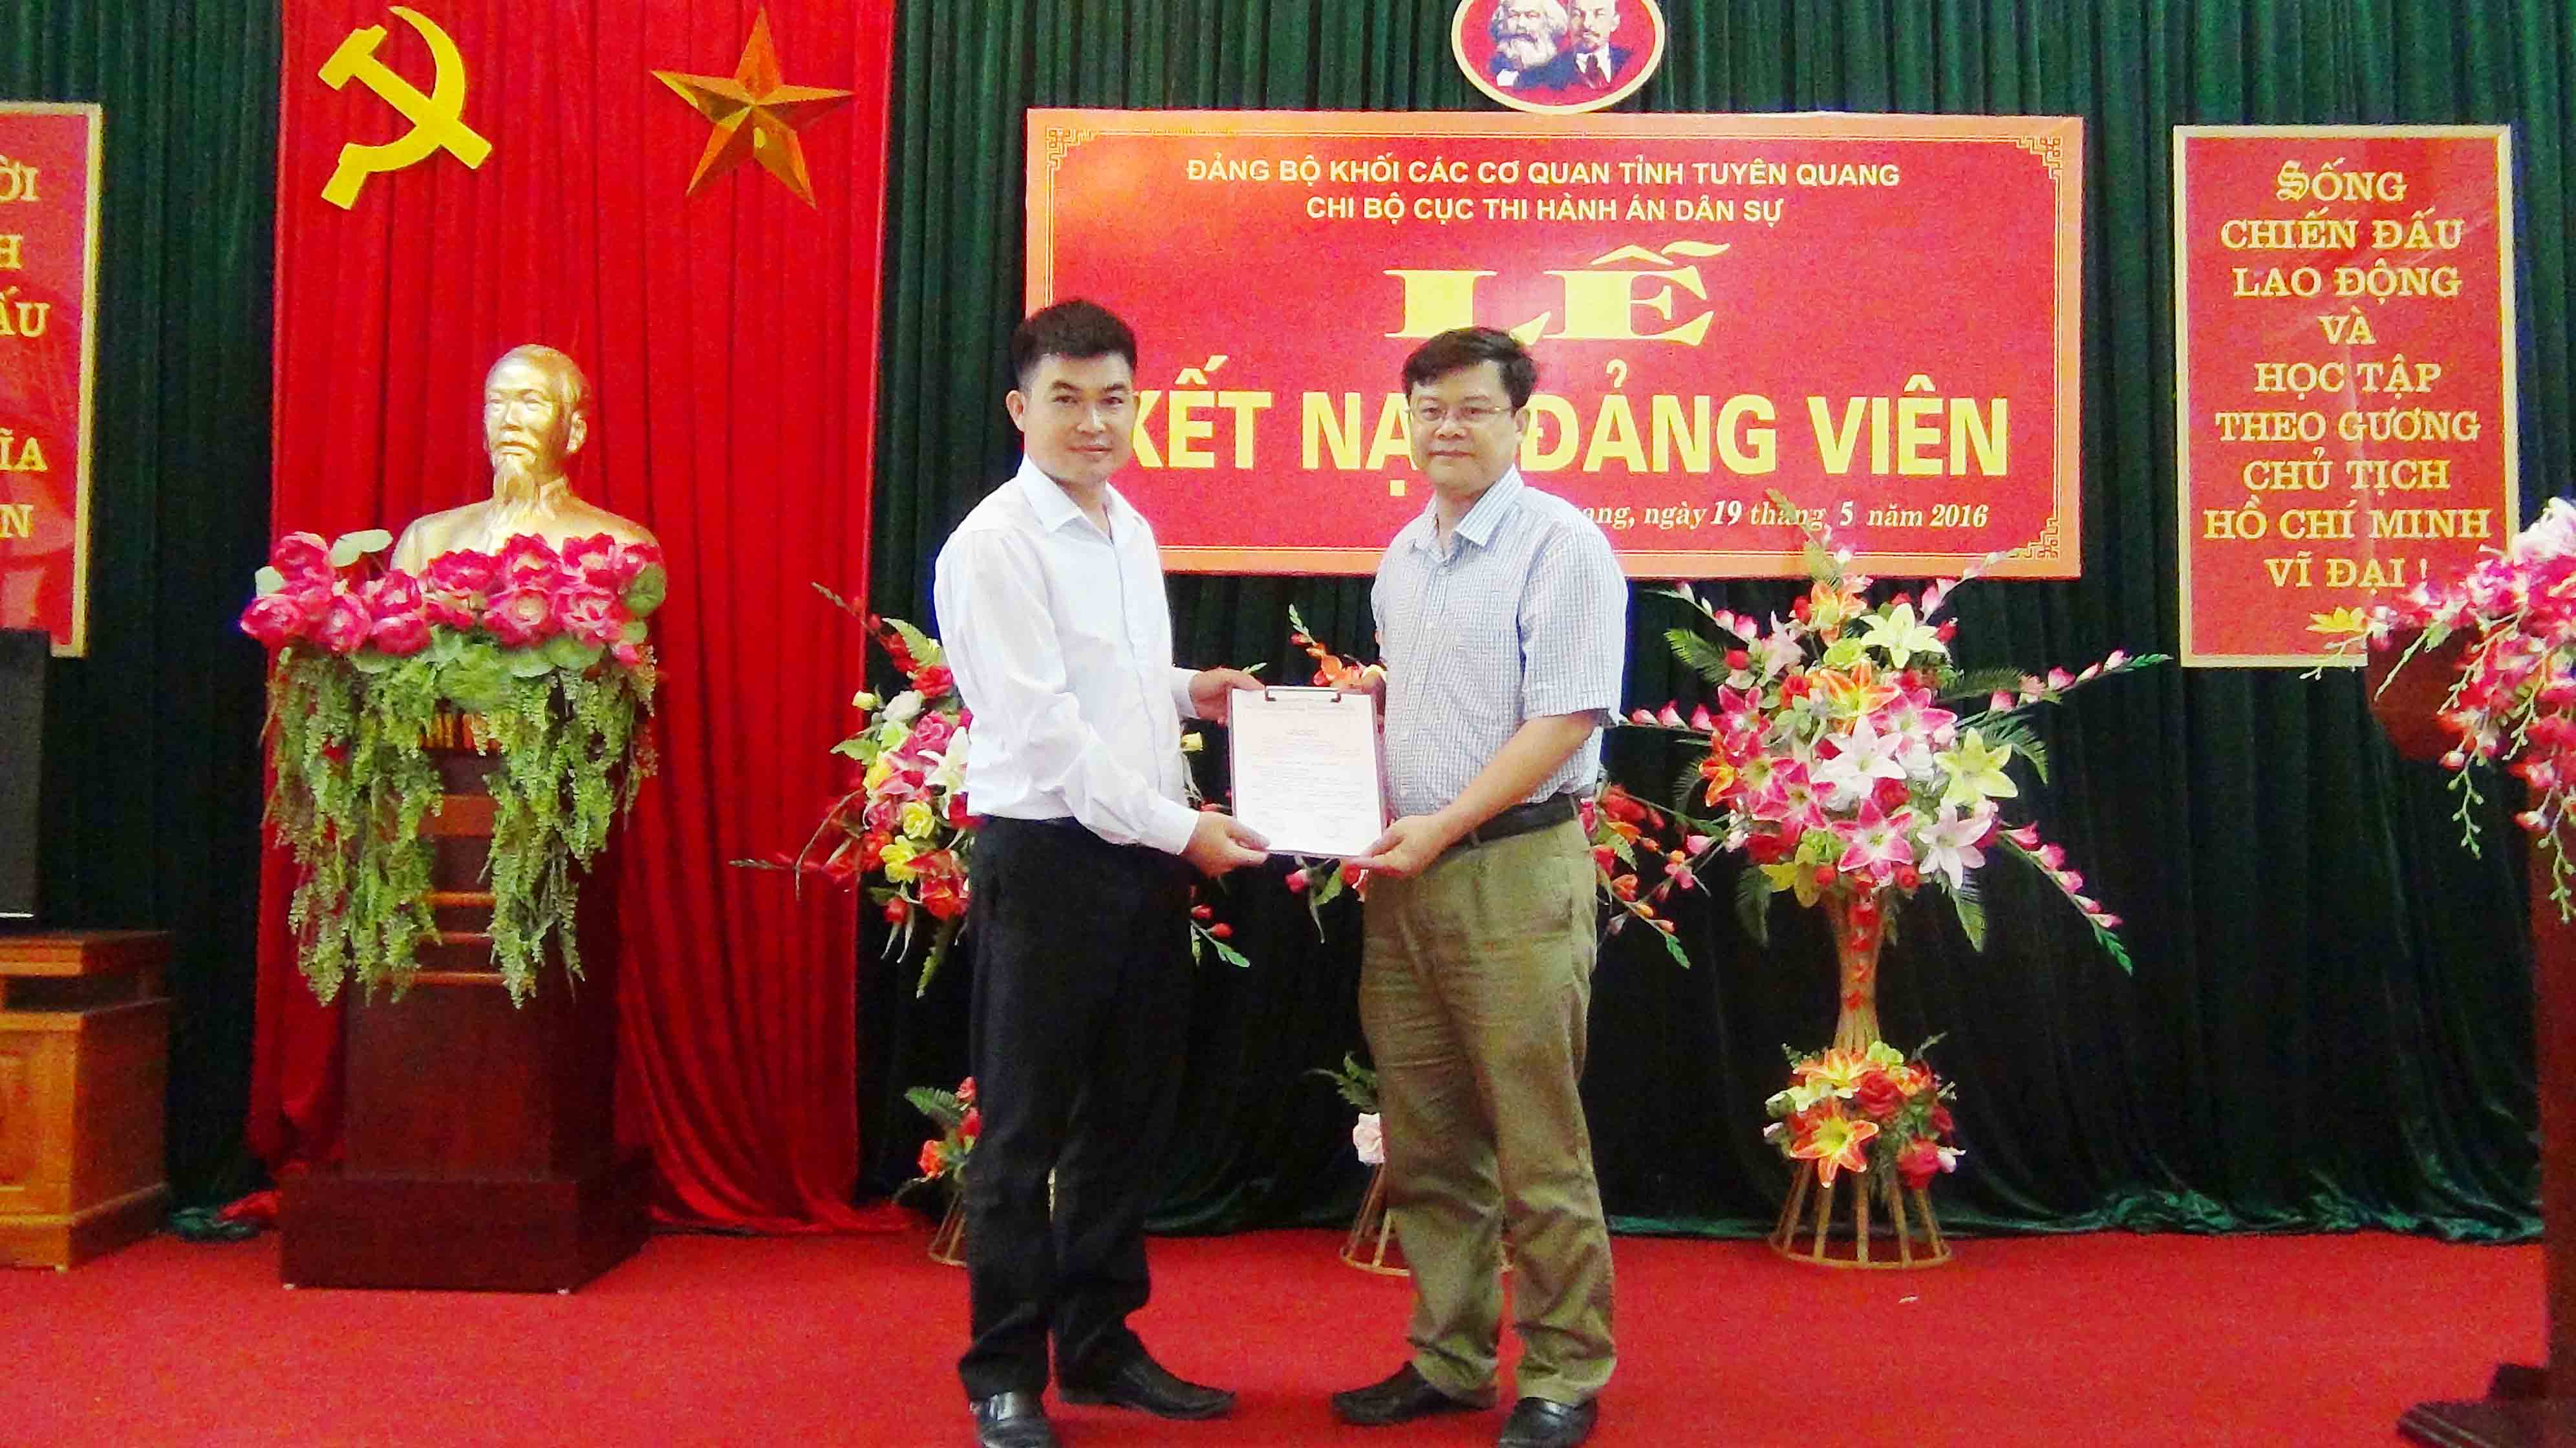 Chi bộ Cục thi hành án dân sự tổ chức lễ kết nạp đảng viên nhân dịp kỷ niệm 126 năm Ngày sinh Chủ tịch Hồ Chí Minh.